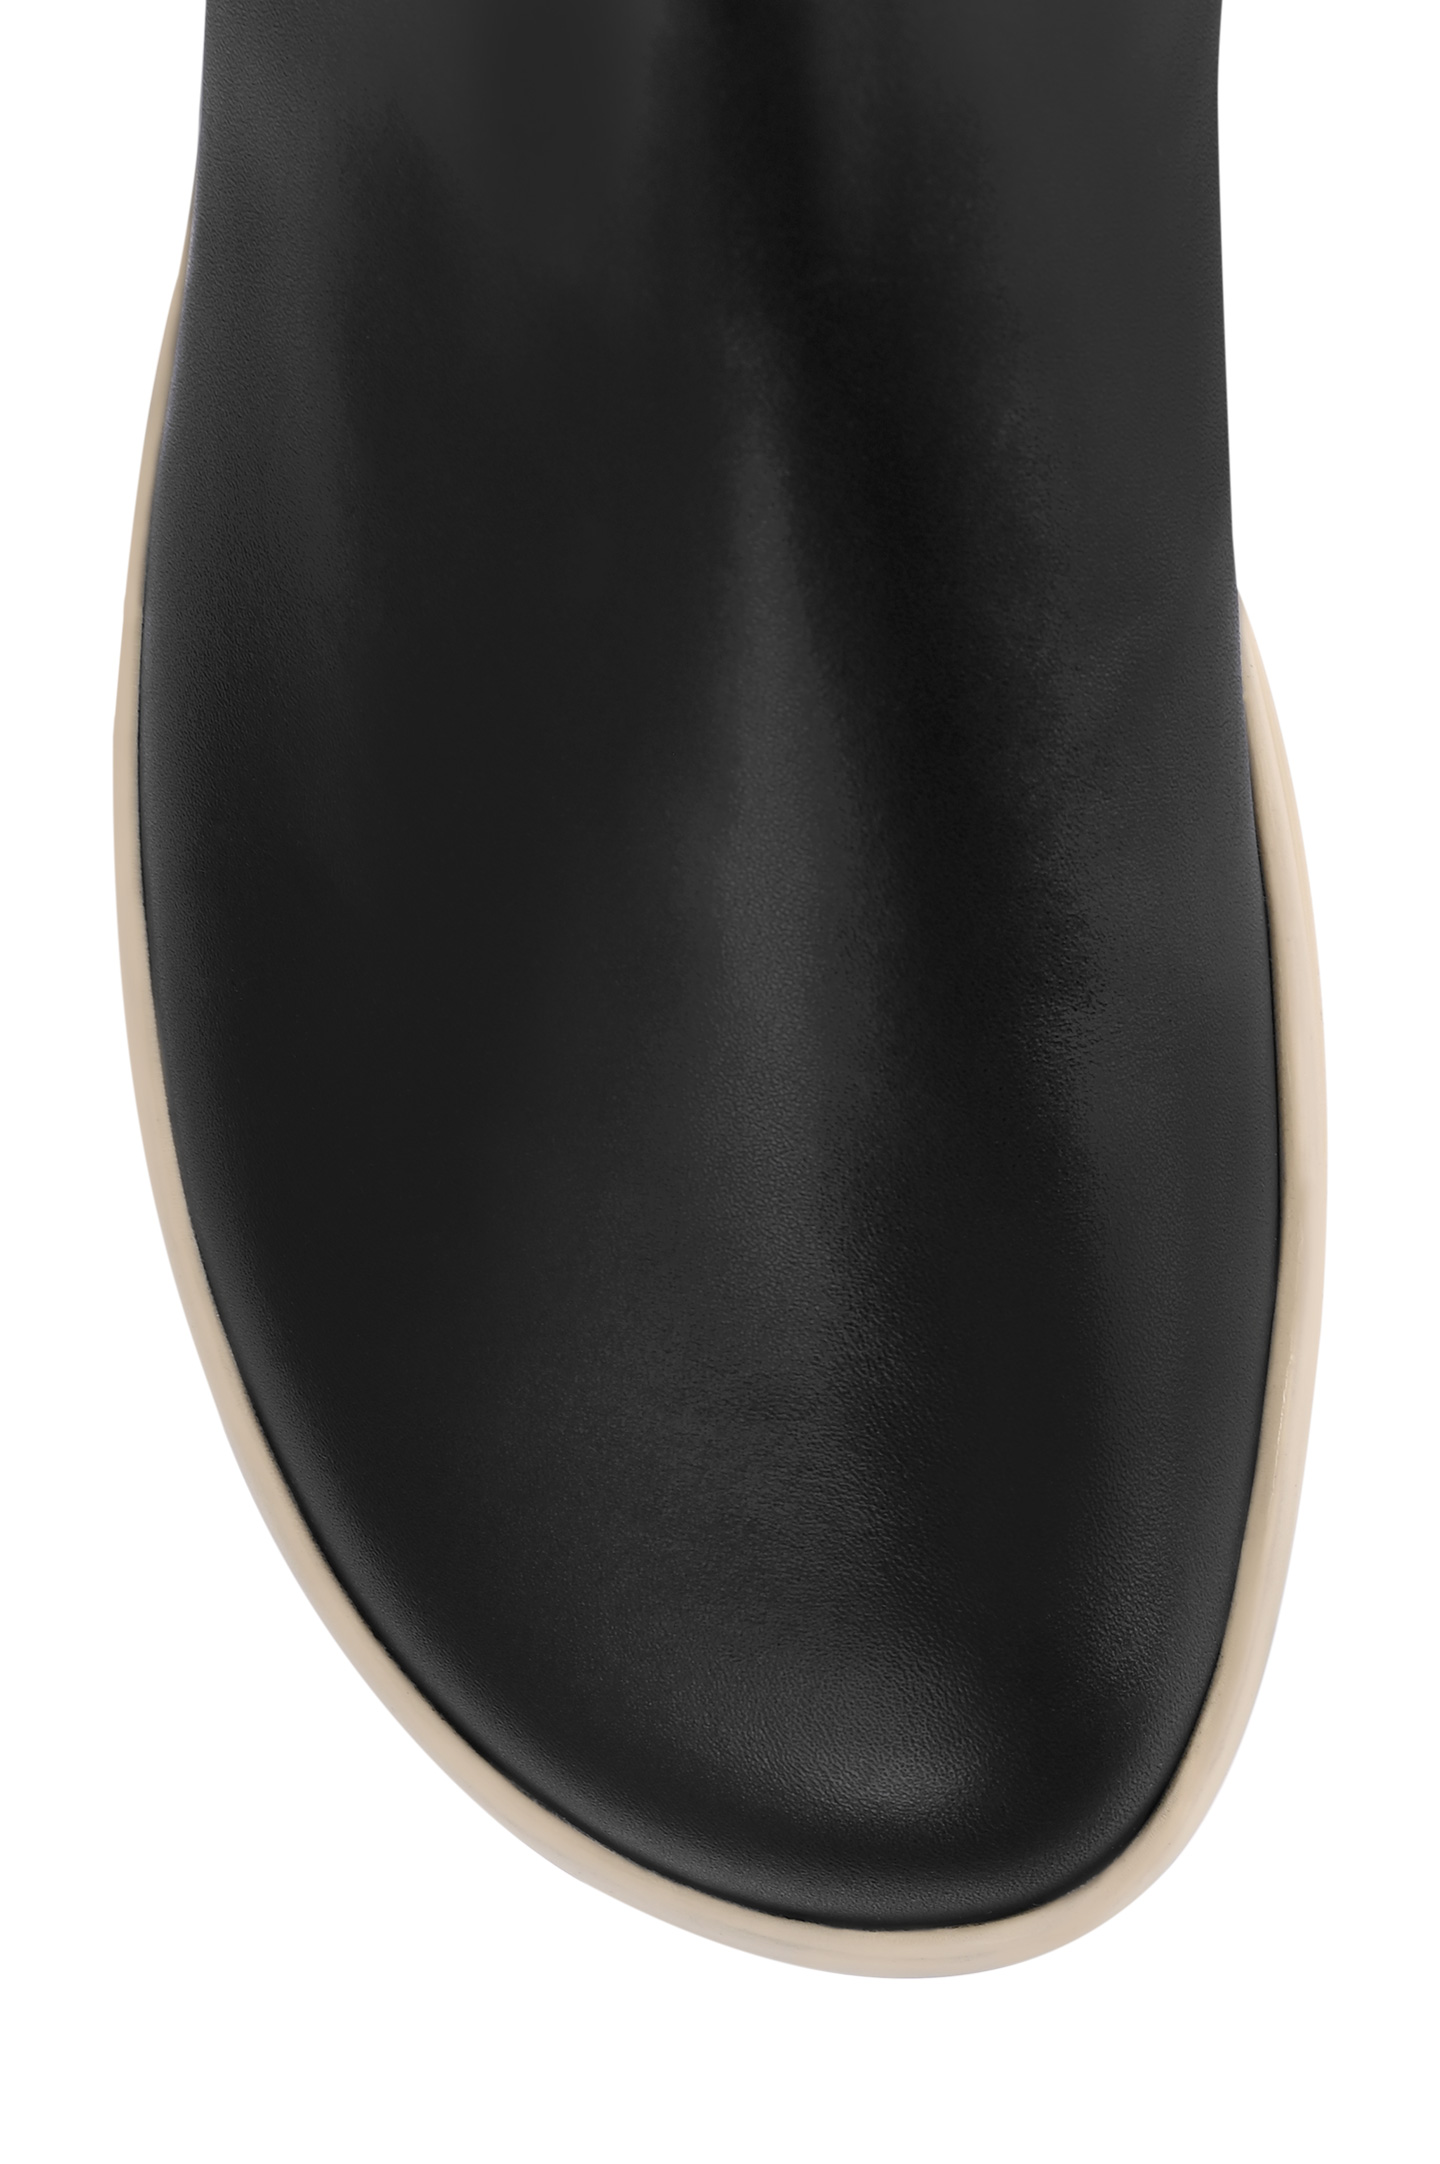 Ботинки LORO PIANA FAM9950, цвет: Черный, Женский